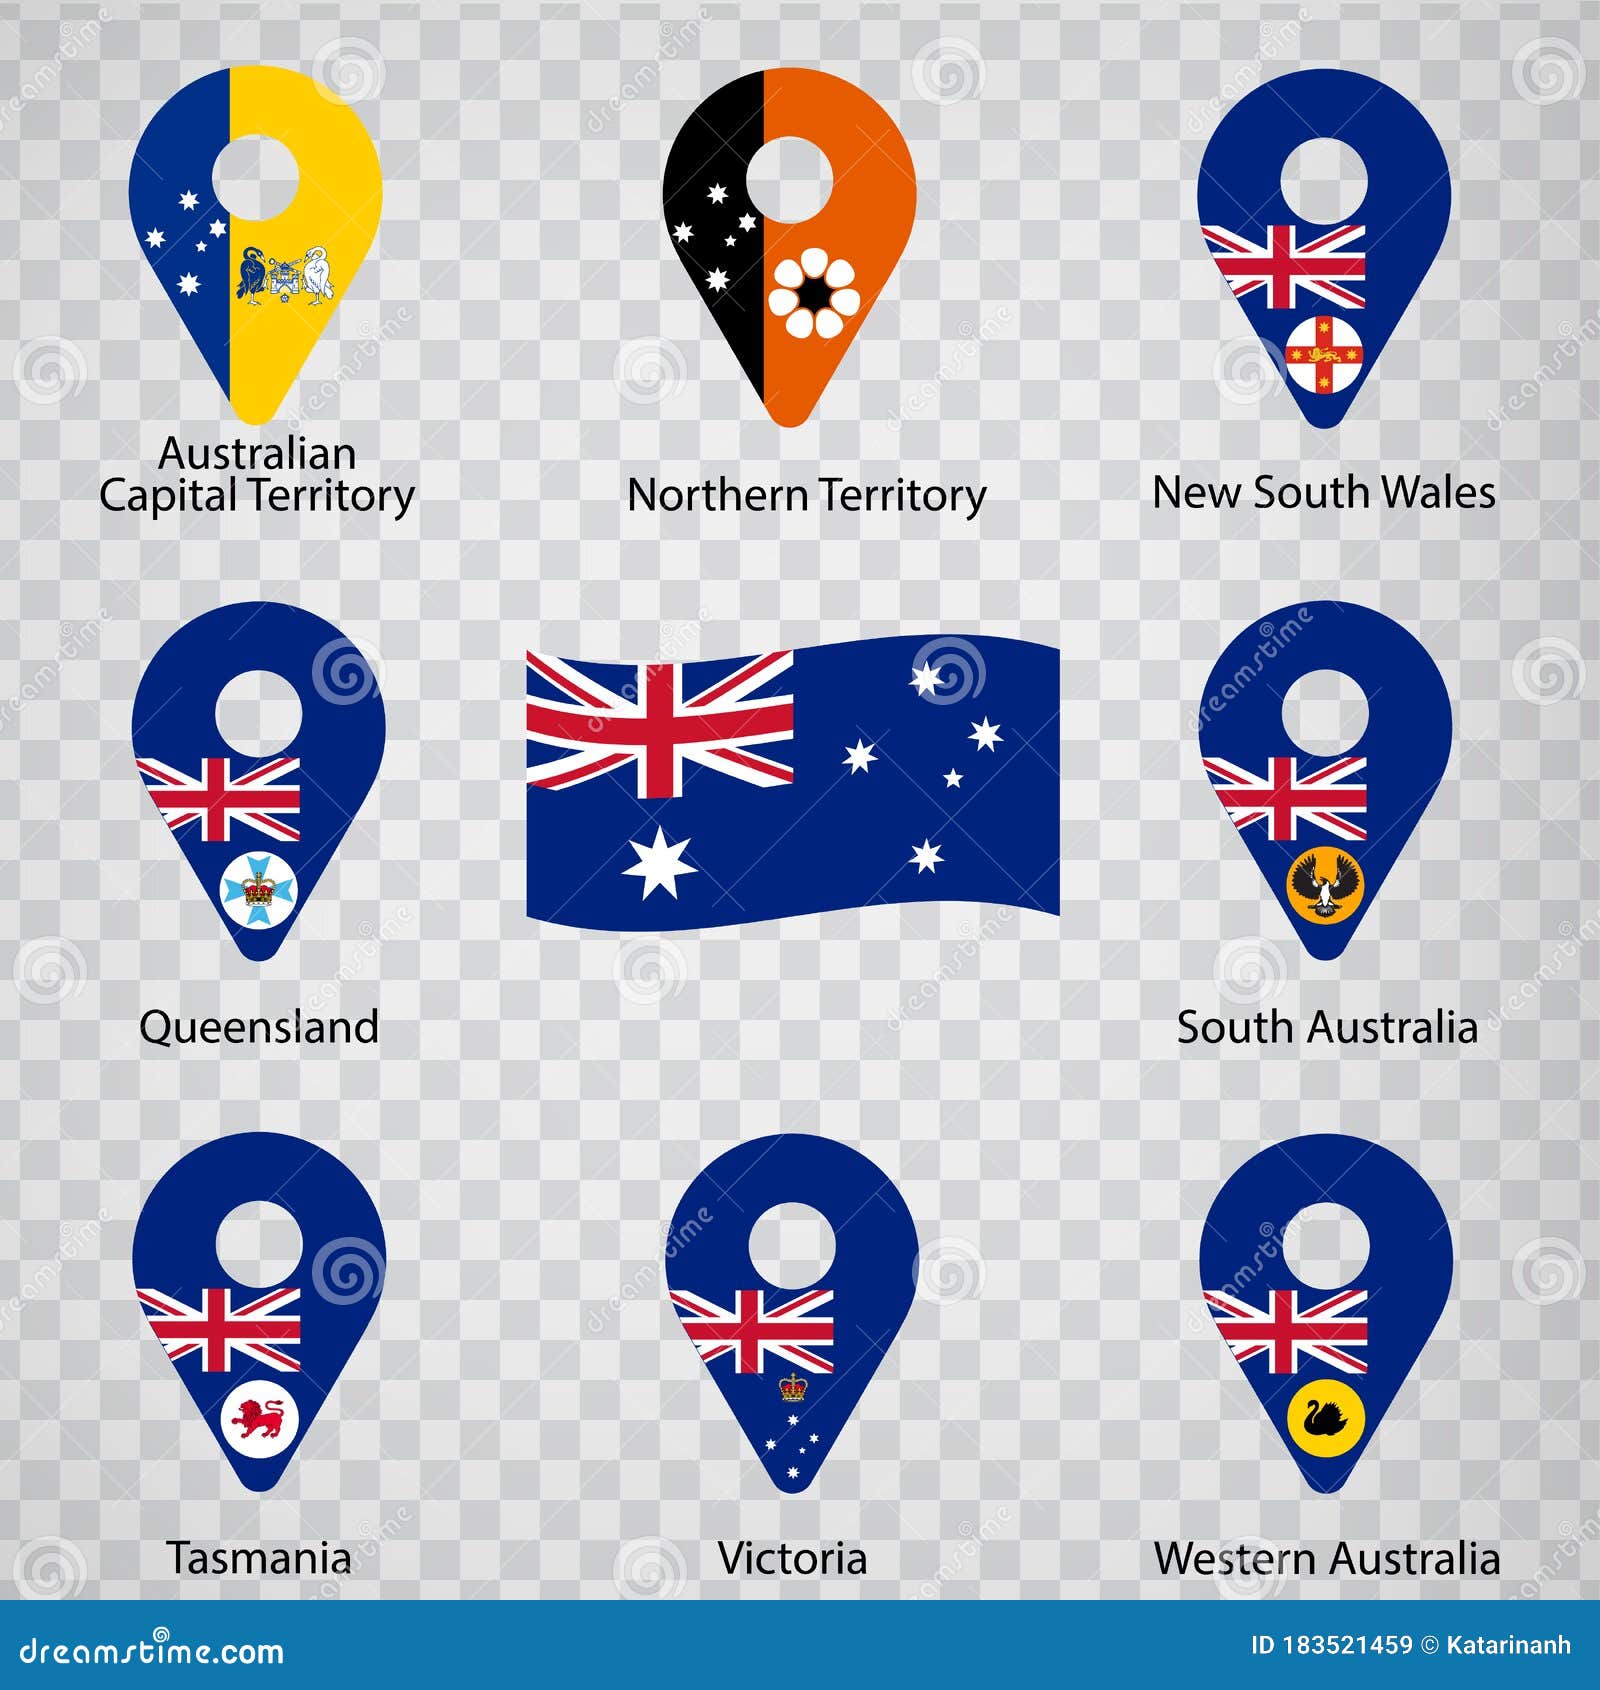 澳大利亚国旗 免费下载照片 | FreeImages